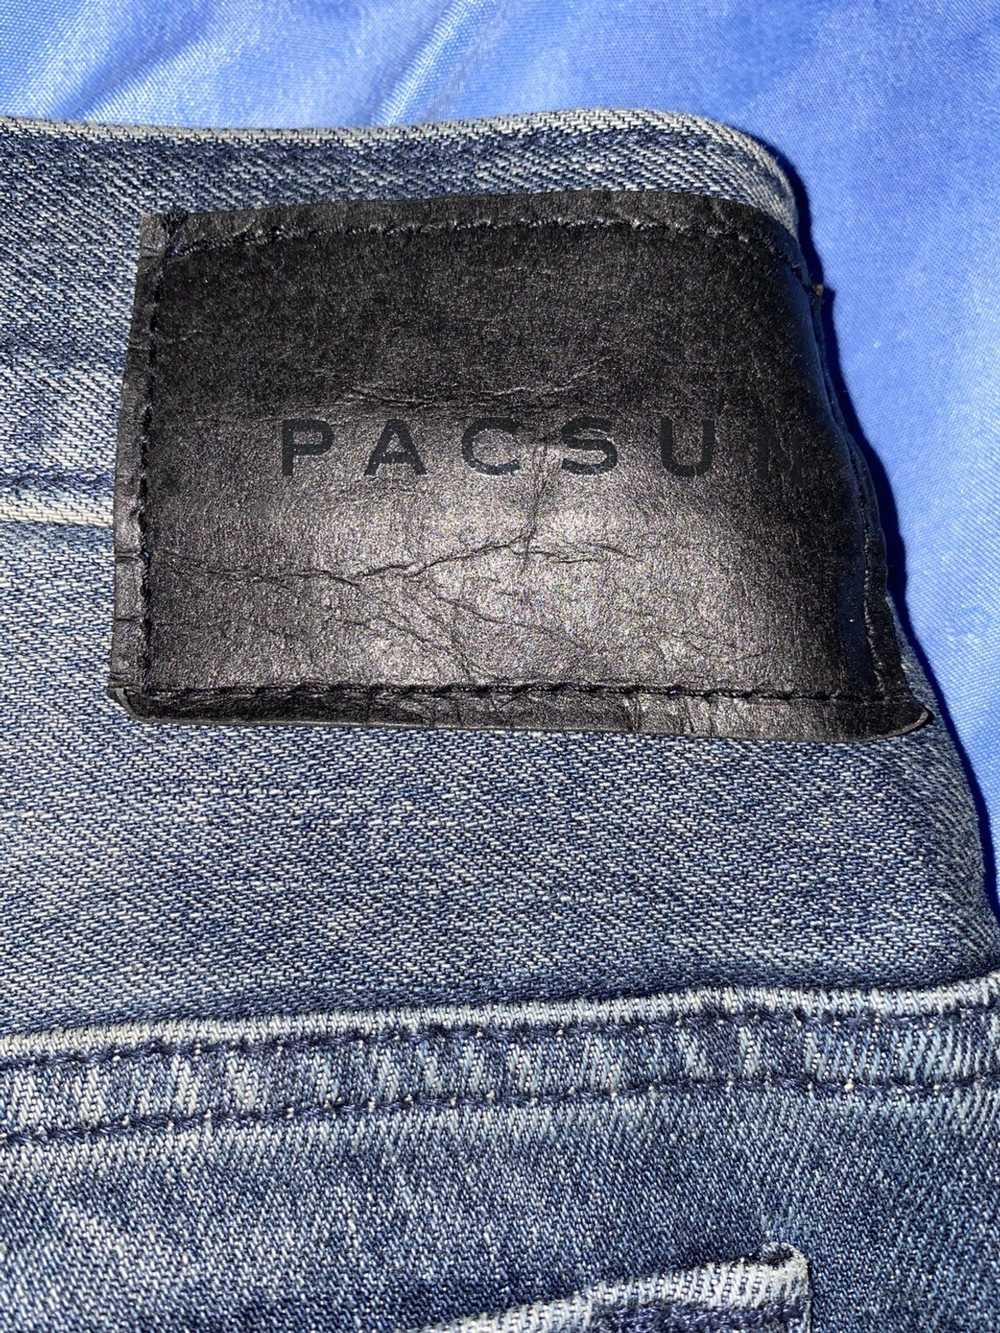 Pacsun Pacsun denim Jeans indigo fade - image 5